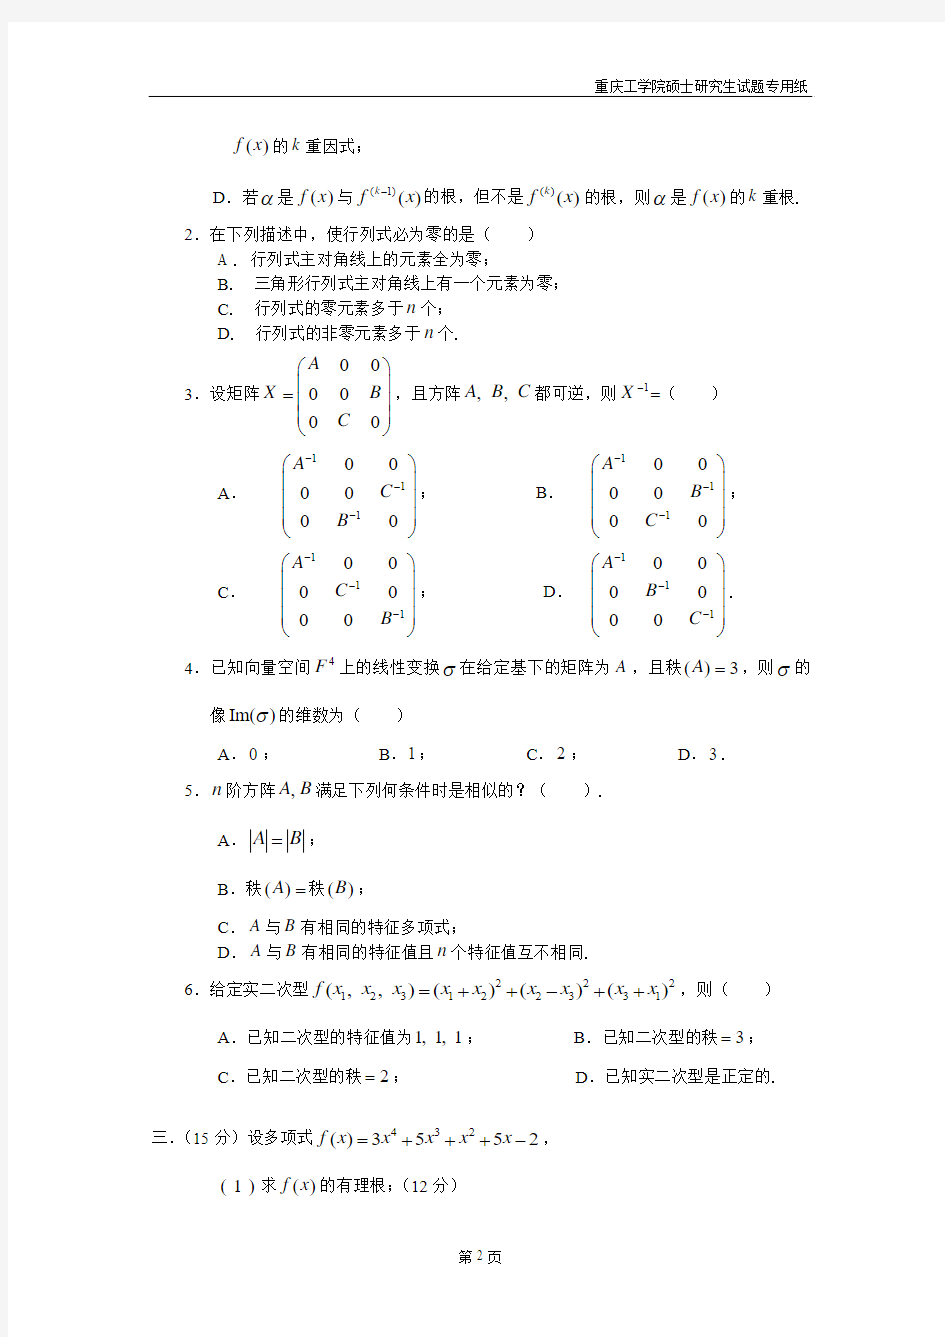 重庆理工大学 2009 年攻读硕士学位研究生数学入学考试试题